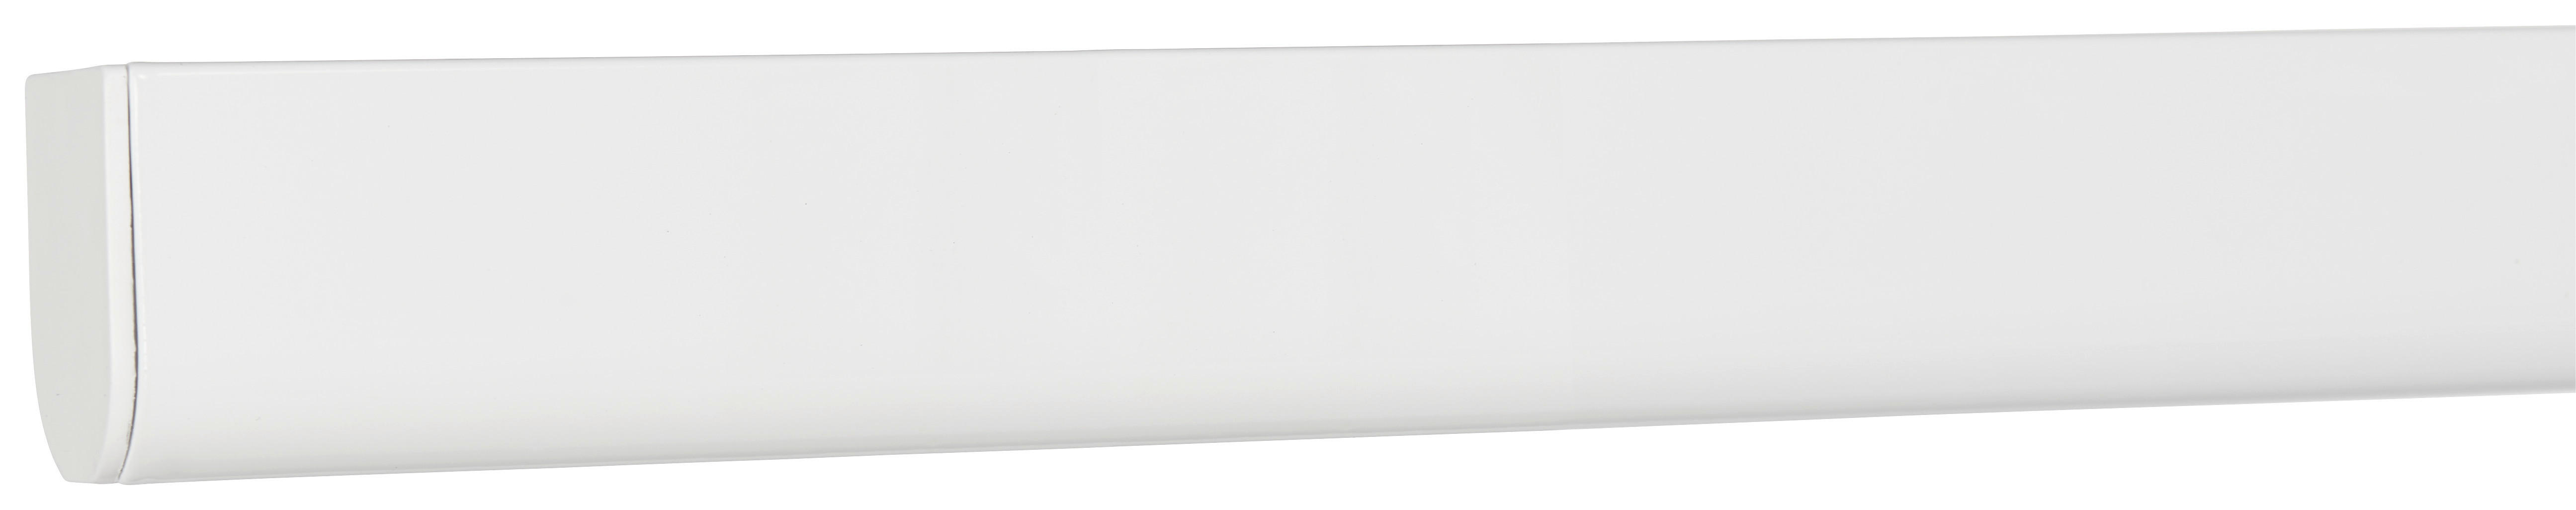 ŠINA ZA ZAVESU bela, metal, plastika - bela, Osnovno, metal/plastika (120-230cm) - Homeware